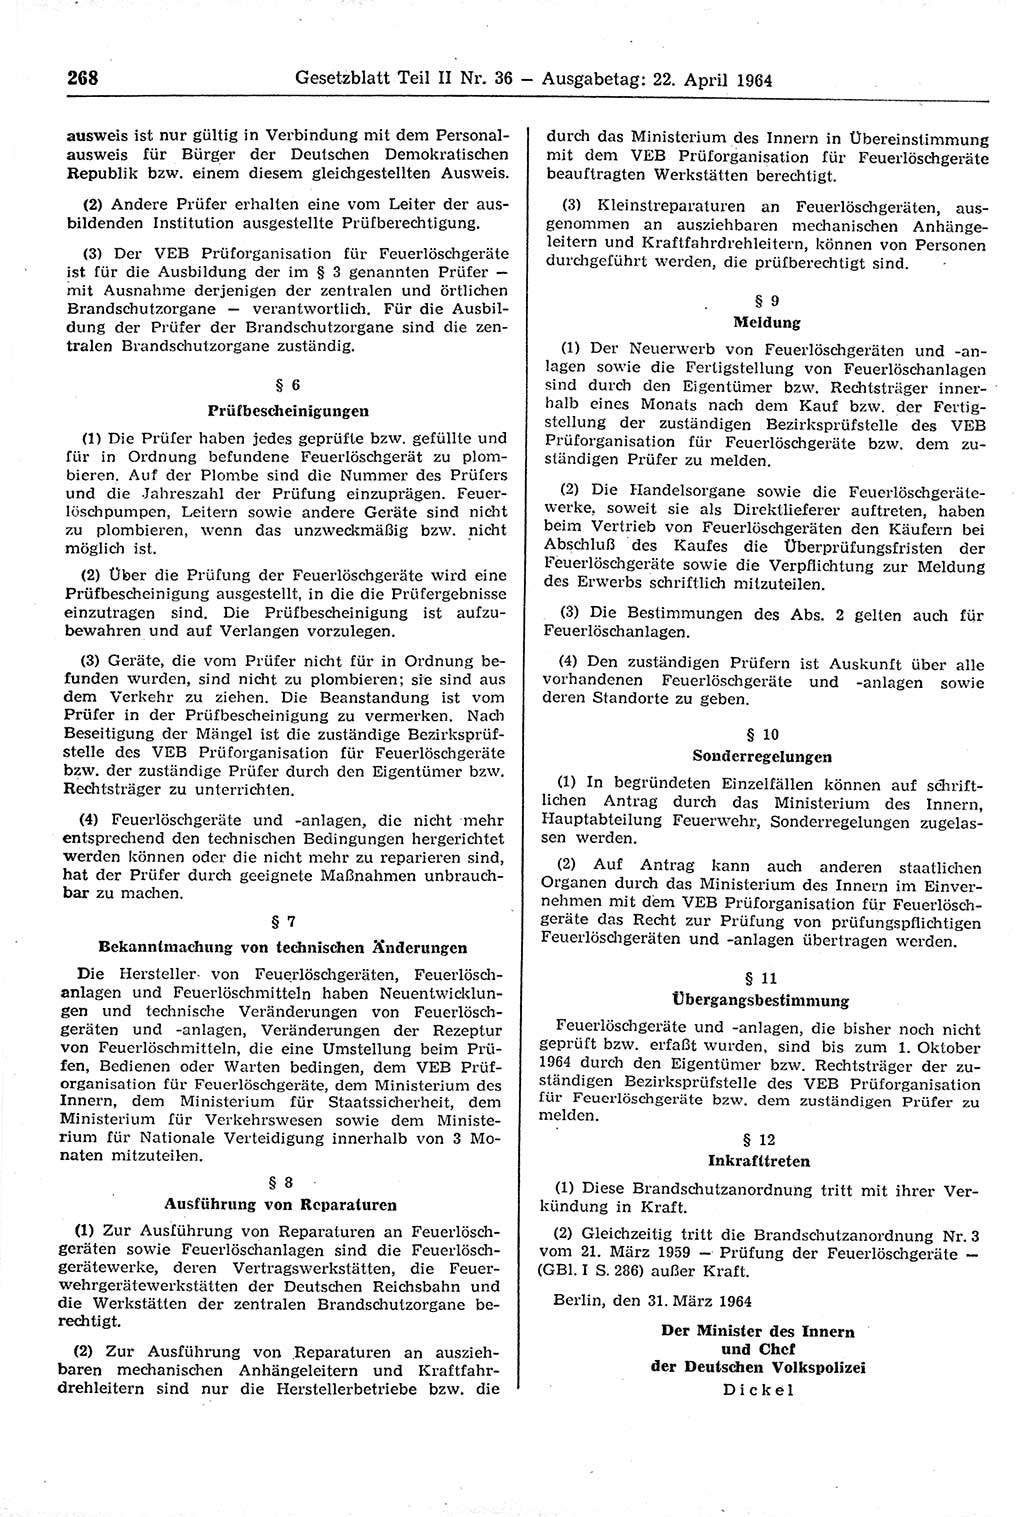 Gesetzblatt (GBl.) der Deutschen Demokratischen Republik (DDR) Teil ⅠⅠ 1964, Seite 268 (GBl. DDR ⅠⅠ 1964, S. 268)